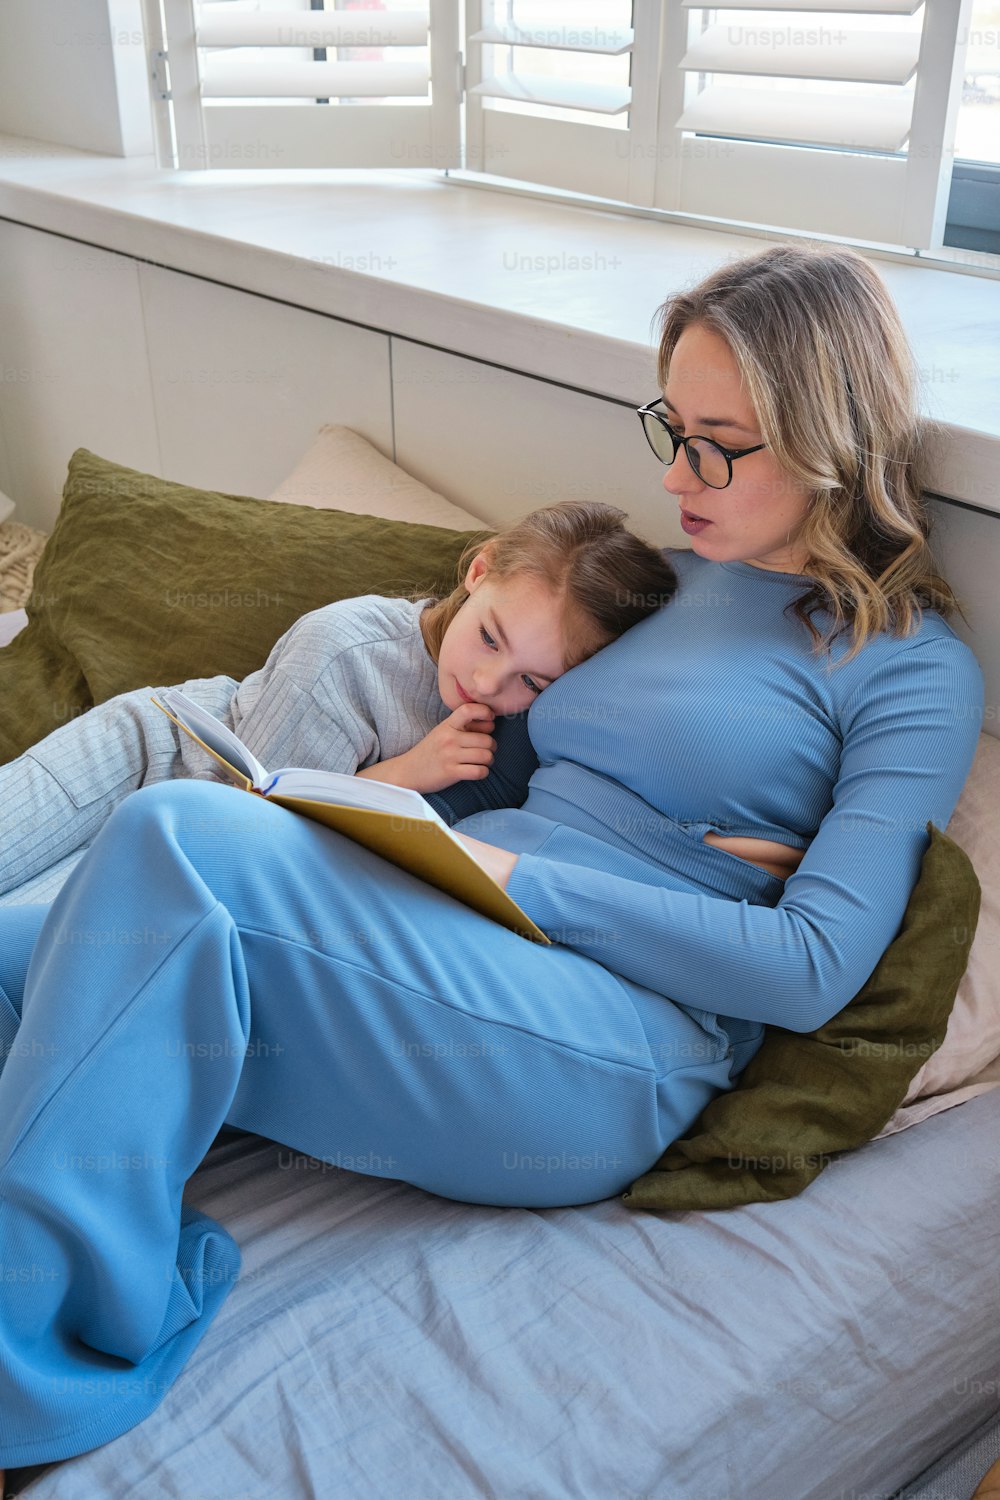 침대에서 아이에게 책을 읽어주는 여자